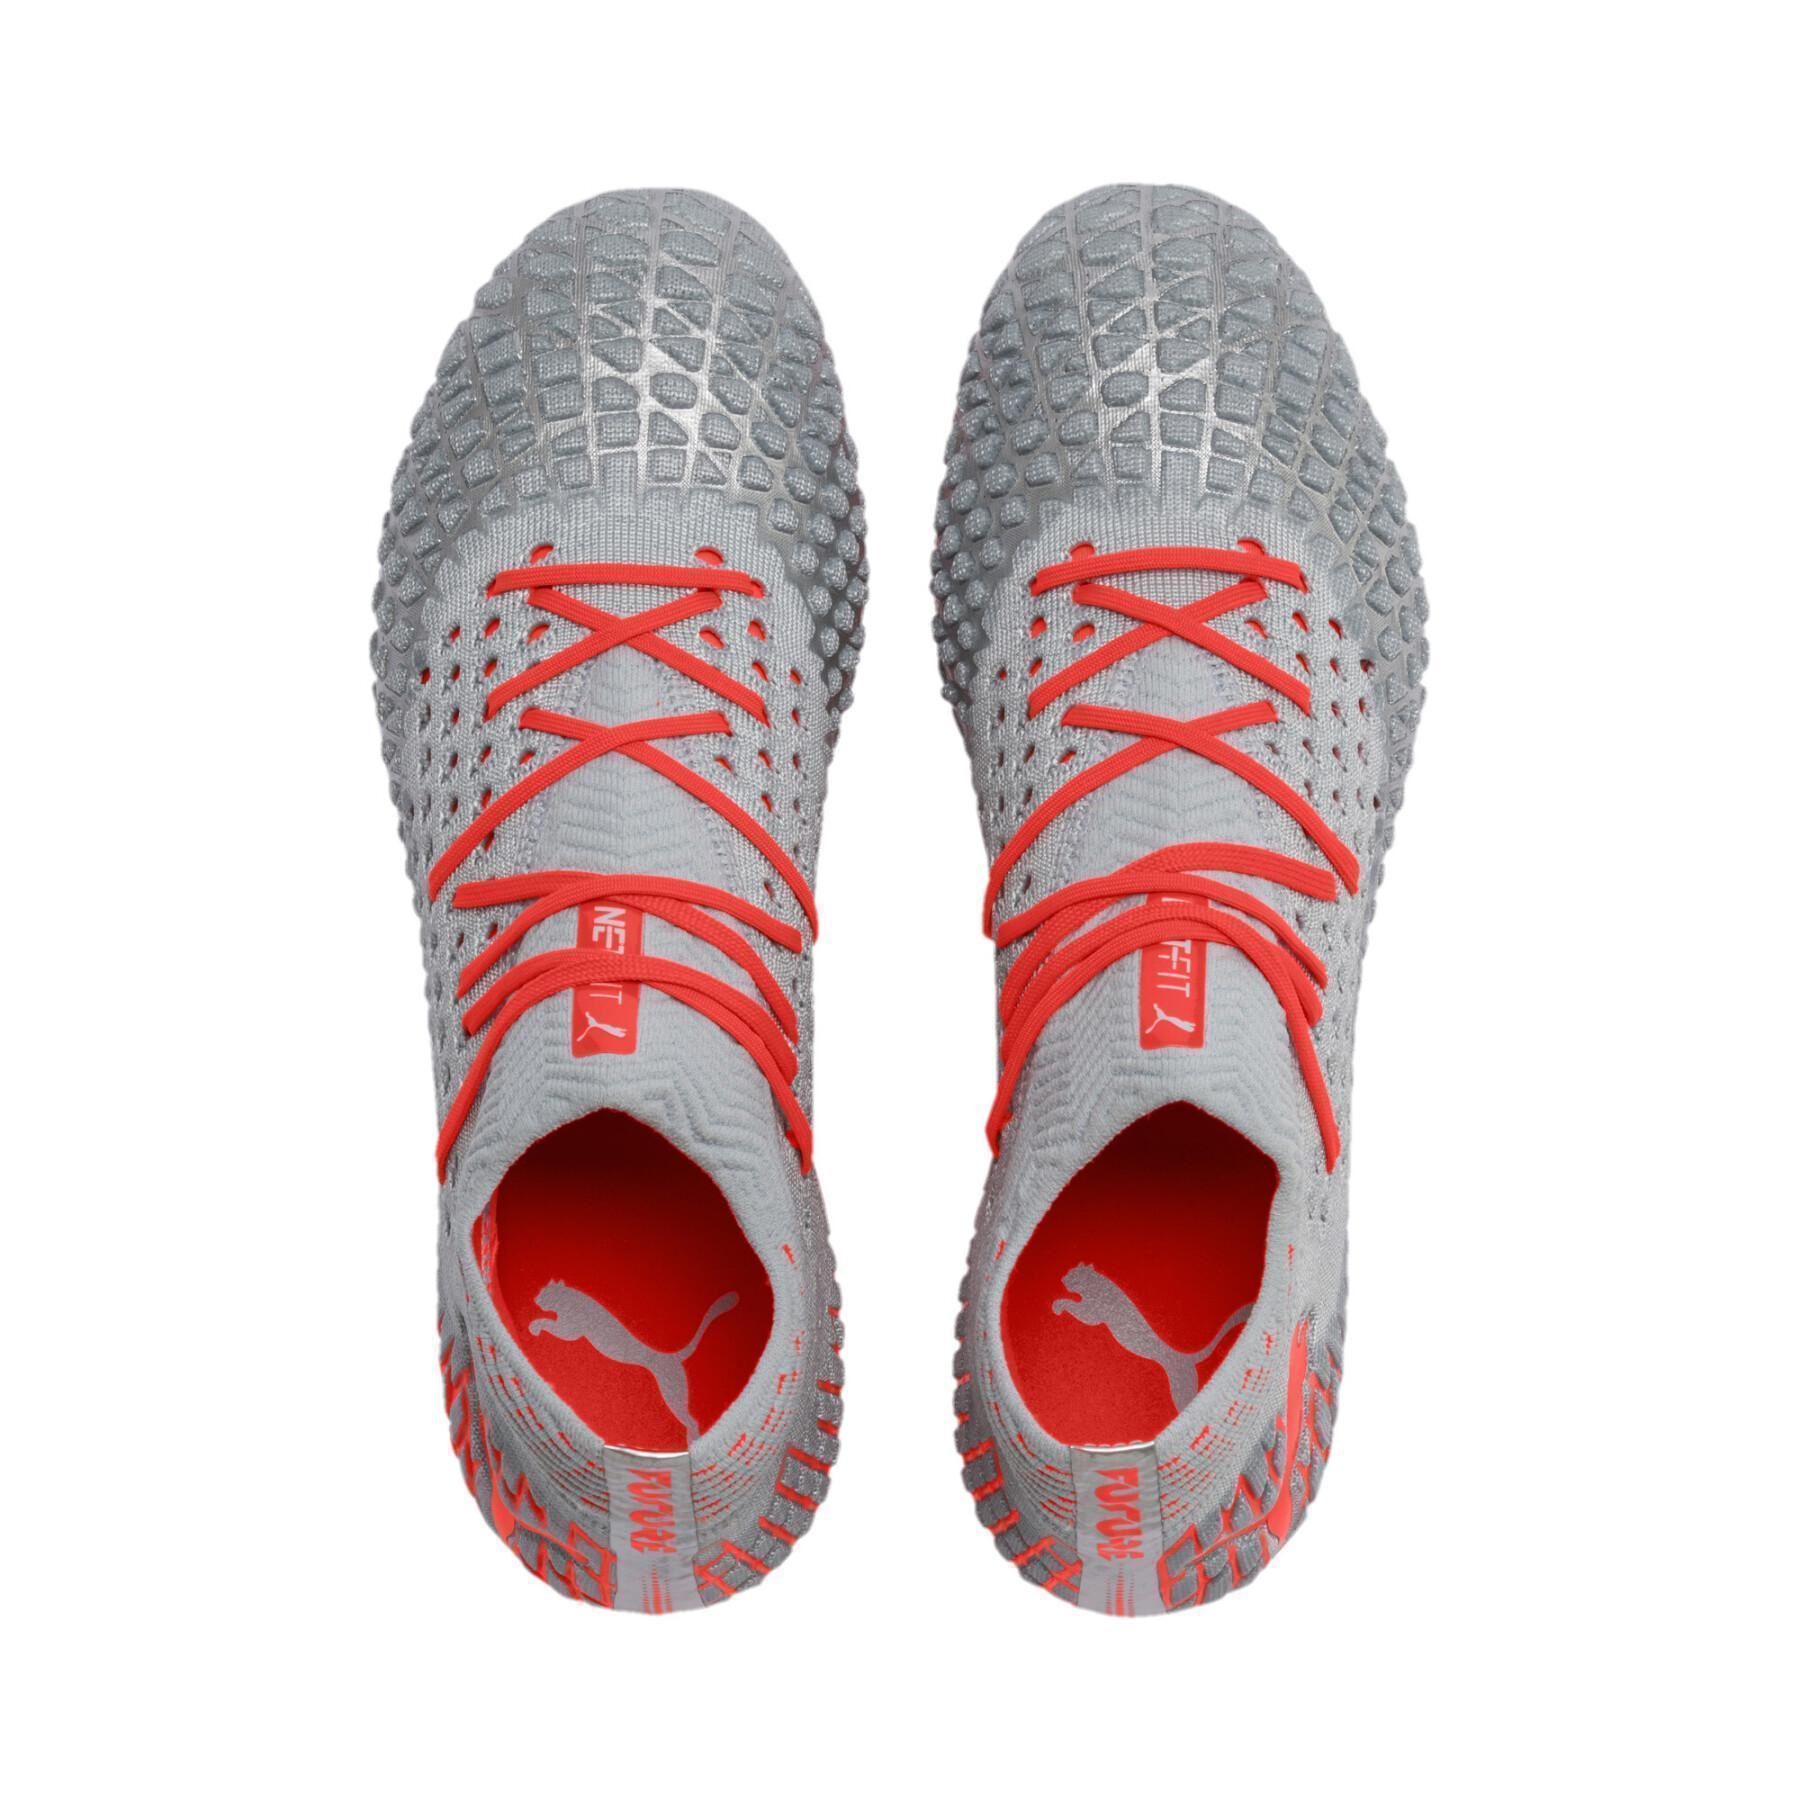 Soccer shoes Puma Future 4.1